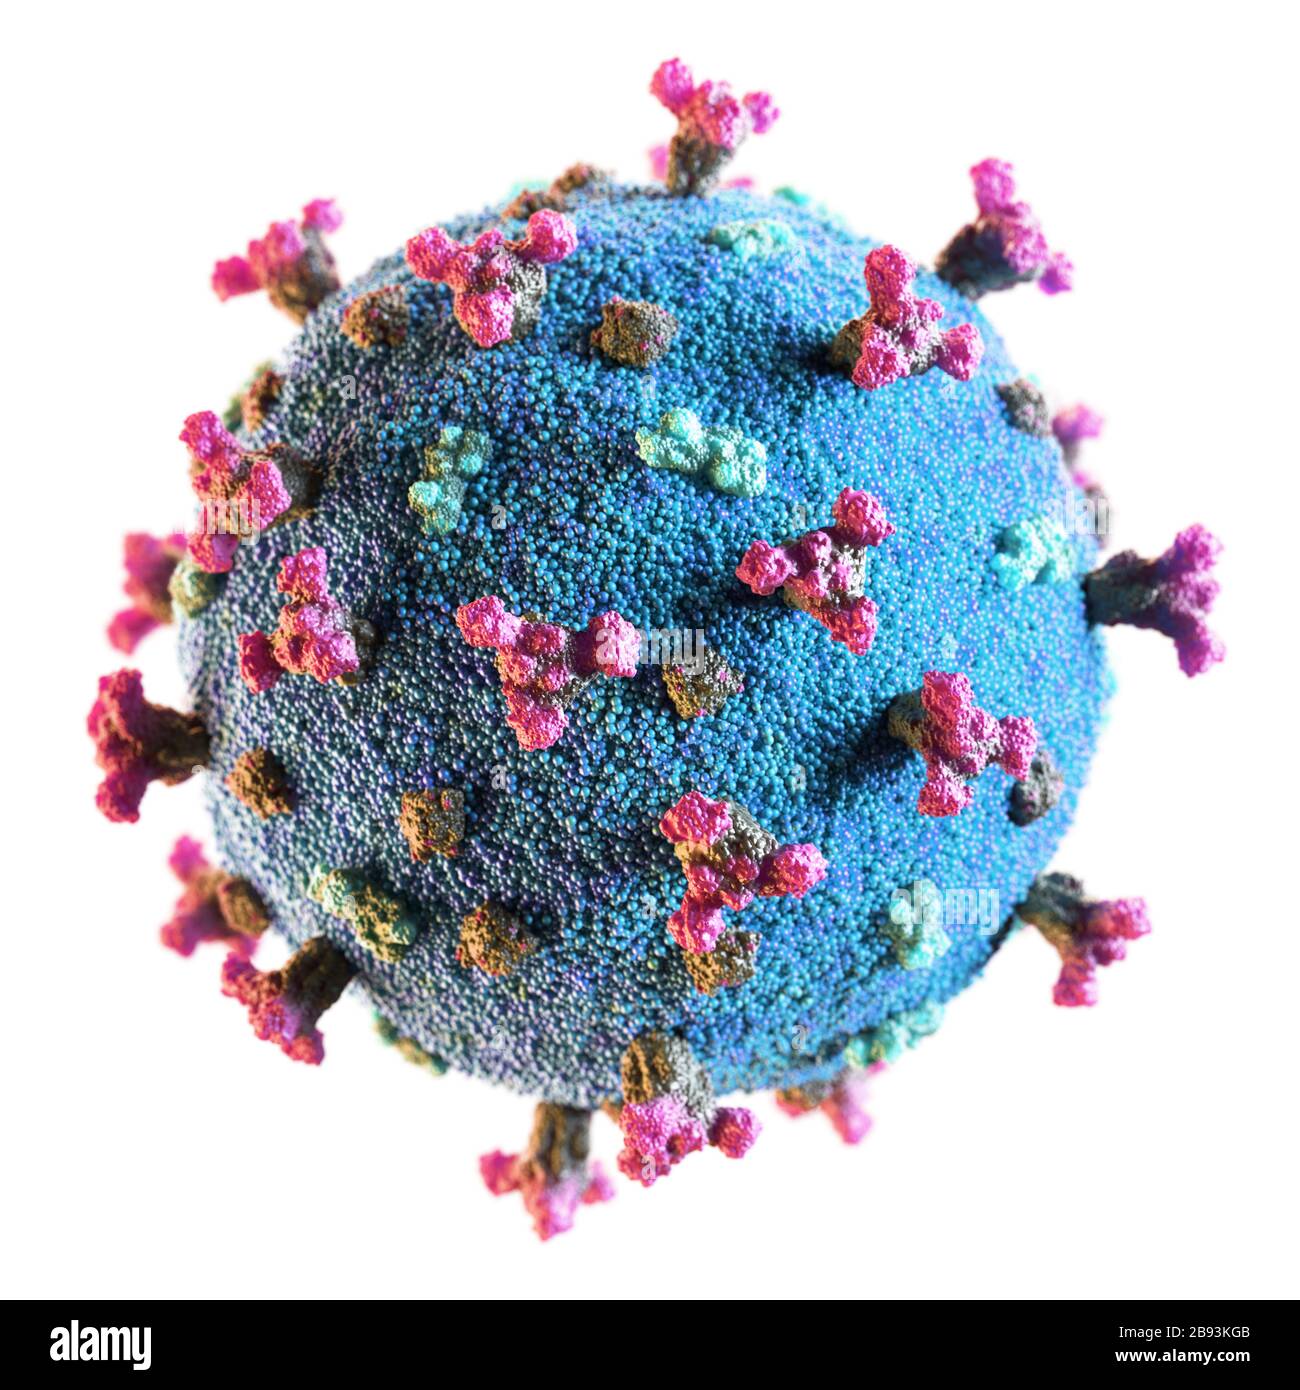 Corona-Virus SARS-COV-2 neuartiges Coronavirus-Konzept, das für den Kovid-19-Ausbruch als gefährliche Grippepandämie resposierbar ist. Nahaufnahme der Mikroskopviruszelle. Stockfoto